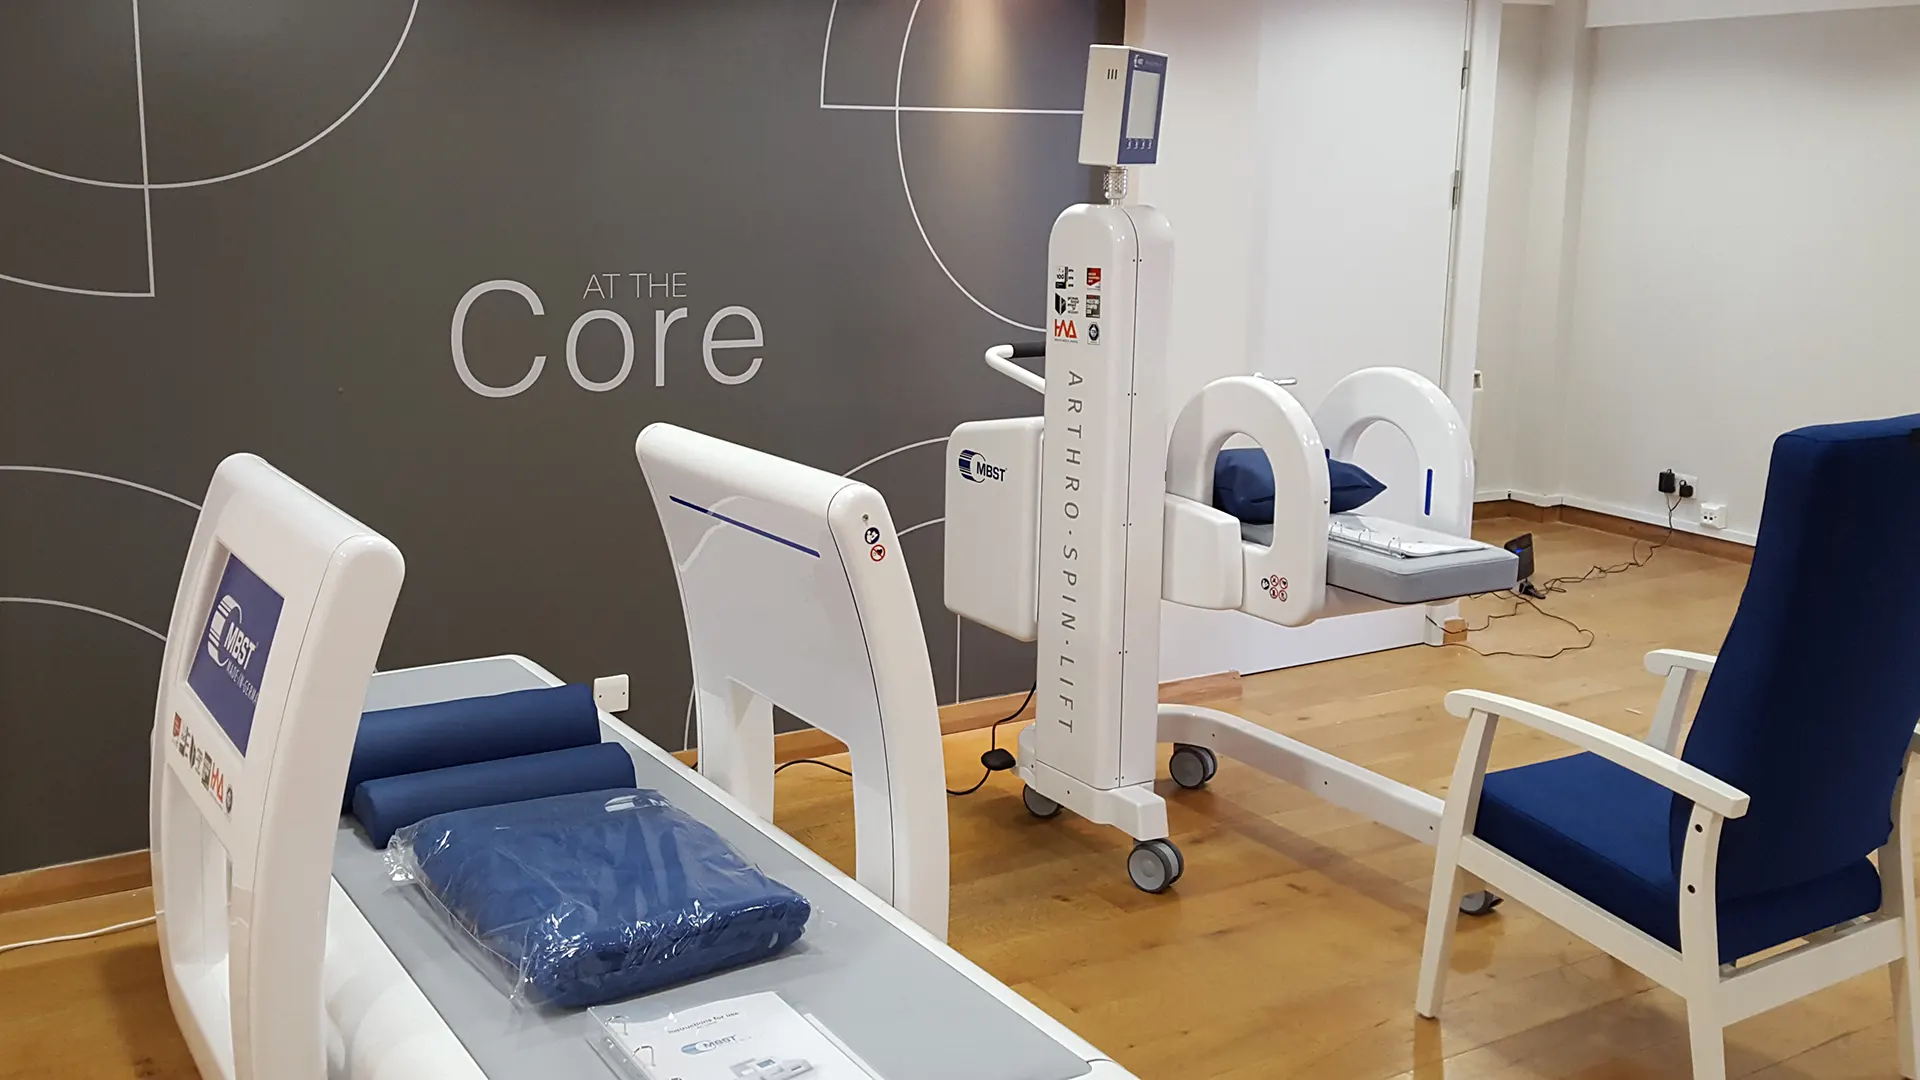 Innenaufnahme vom MBST-Behandlungszentrum At The Core Ltd in Bath. In einem großem Raum mit einem grauen Designelement auf dem der Praxisname 'At the Core' steht sind die neuen Therapiegeräte ARTHRO·SPIN·LIFT und ARTHRO·SPIN·FLEX platziert.